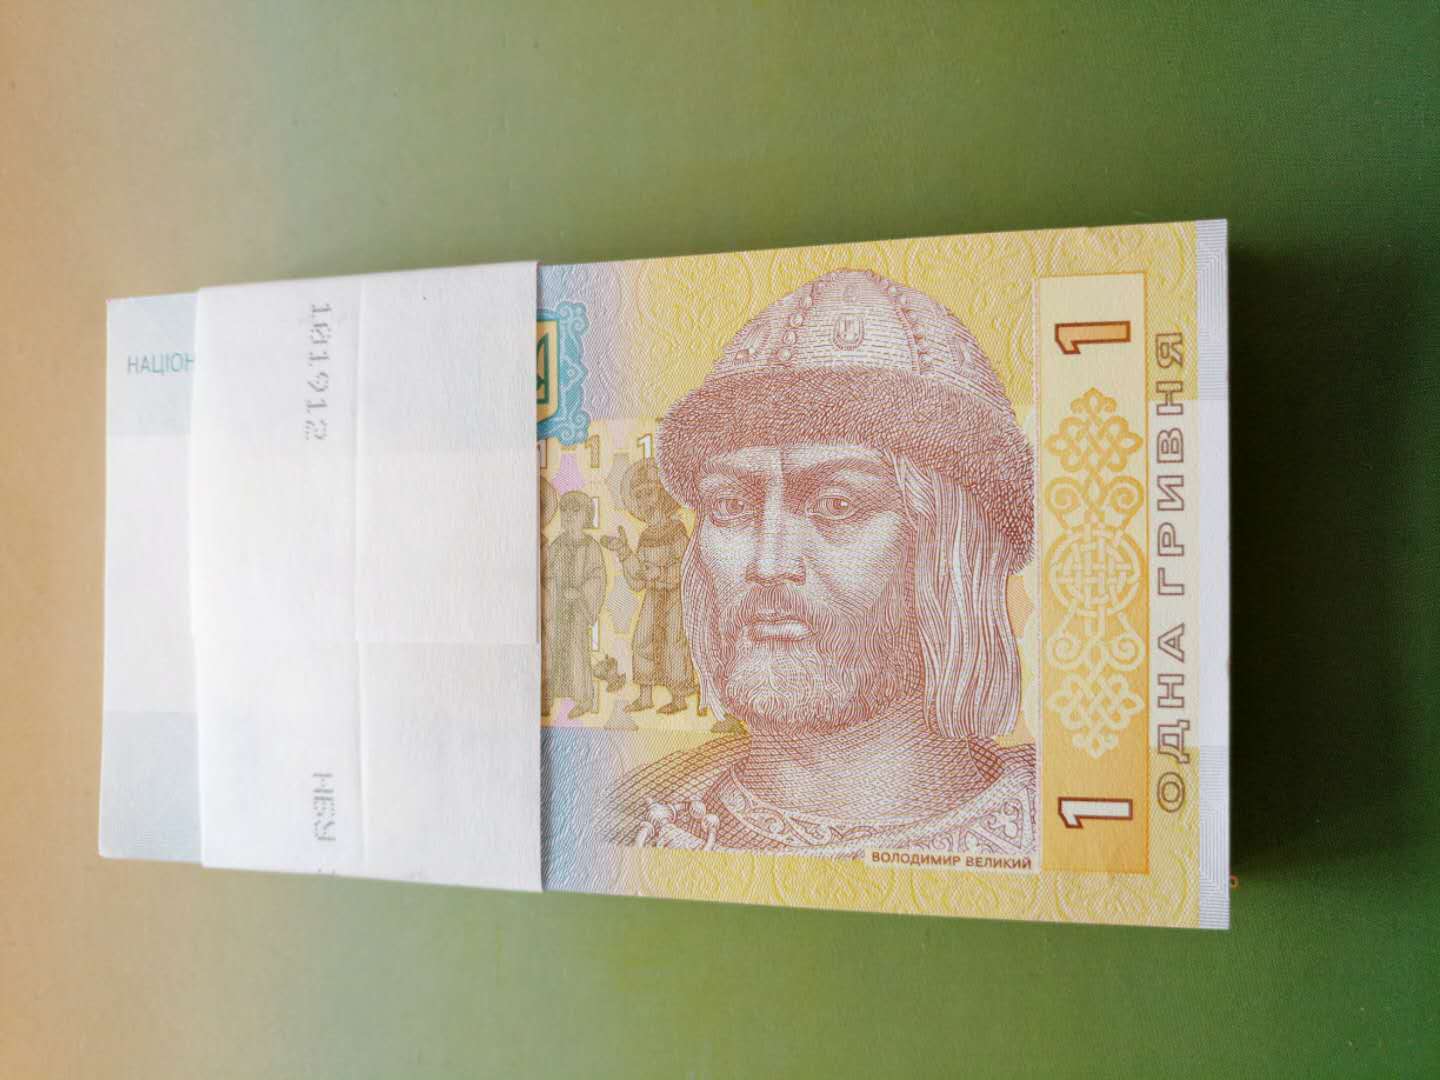 0起拍,乌克兰1纸币捆拆带狮子